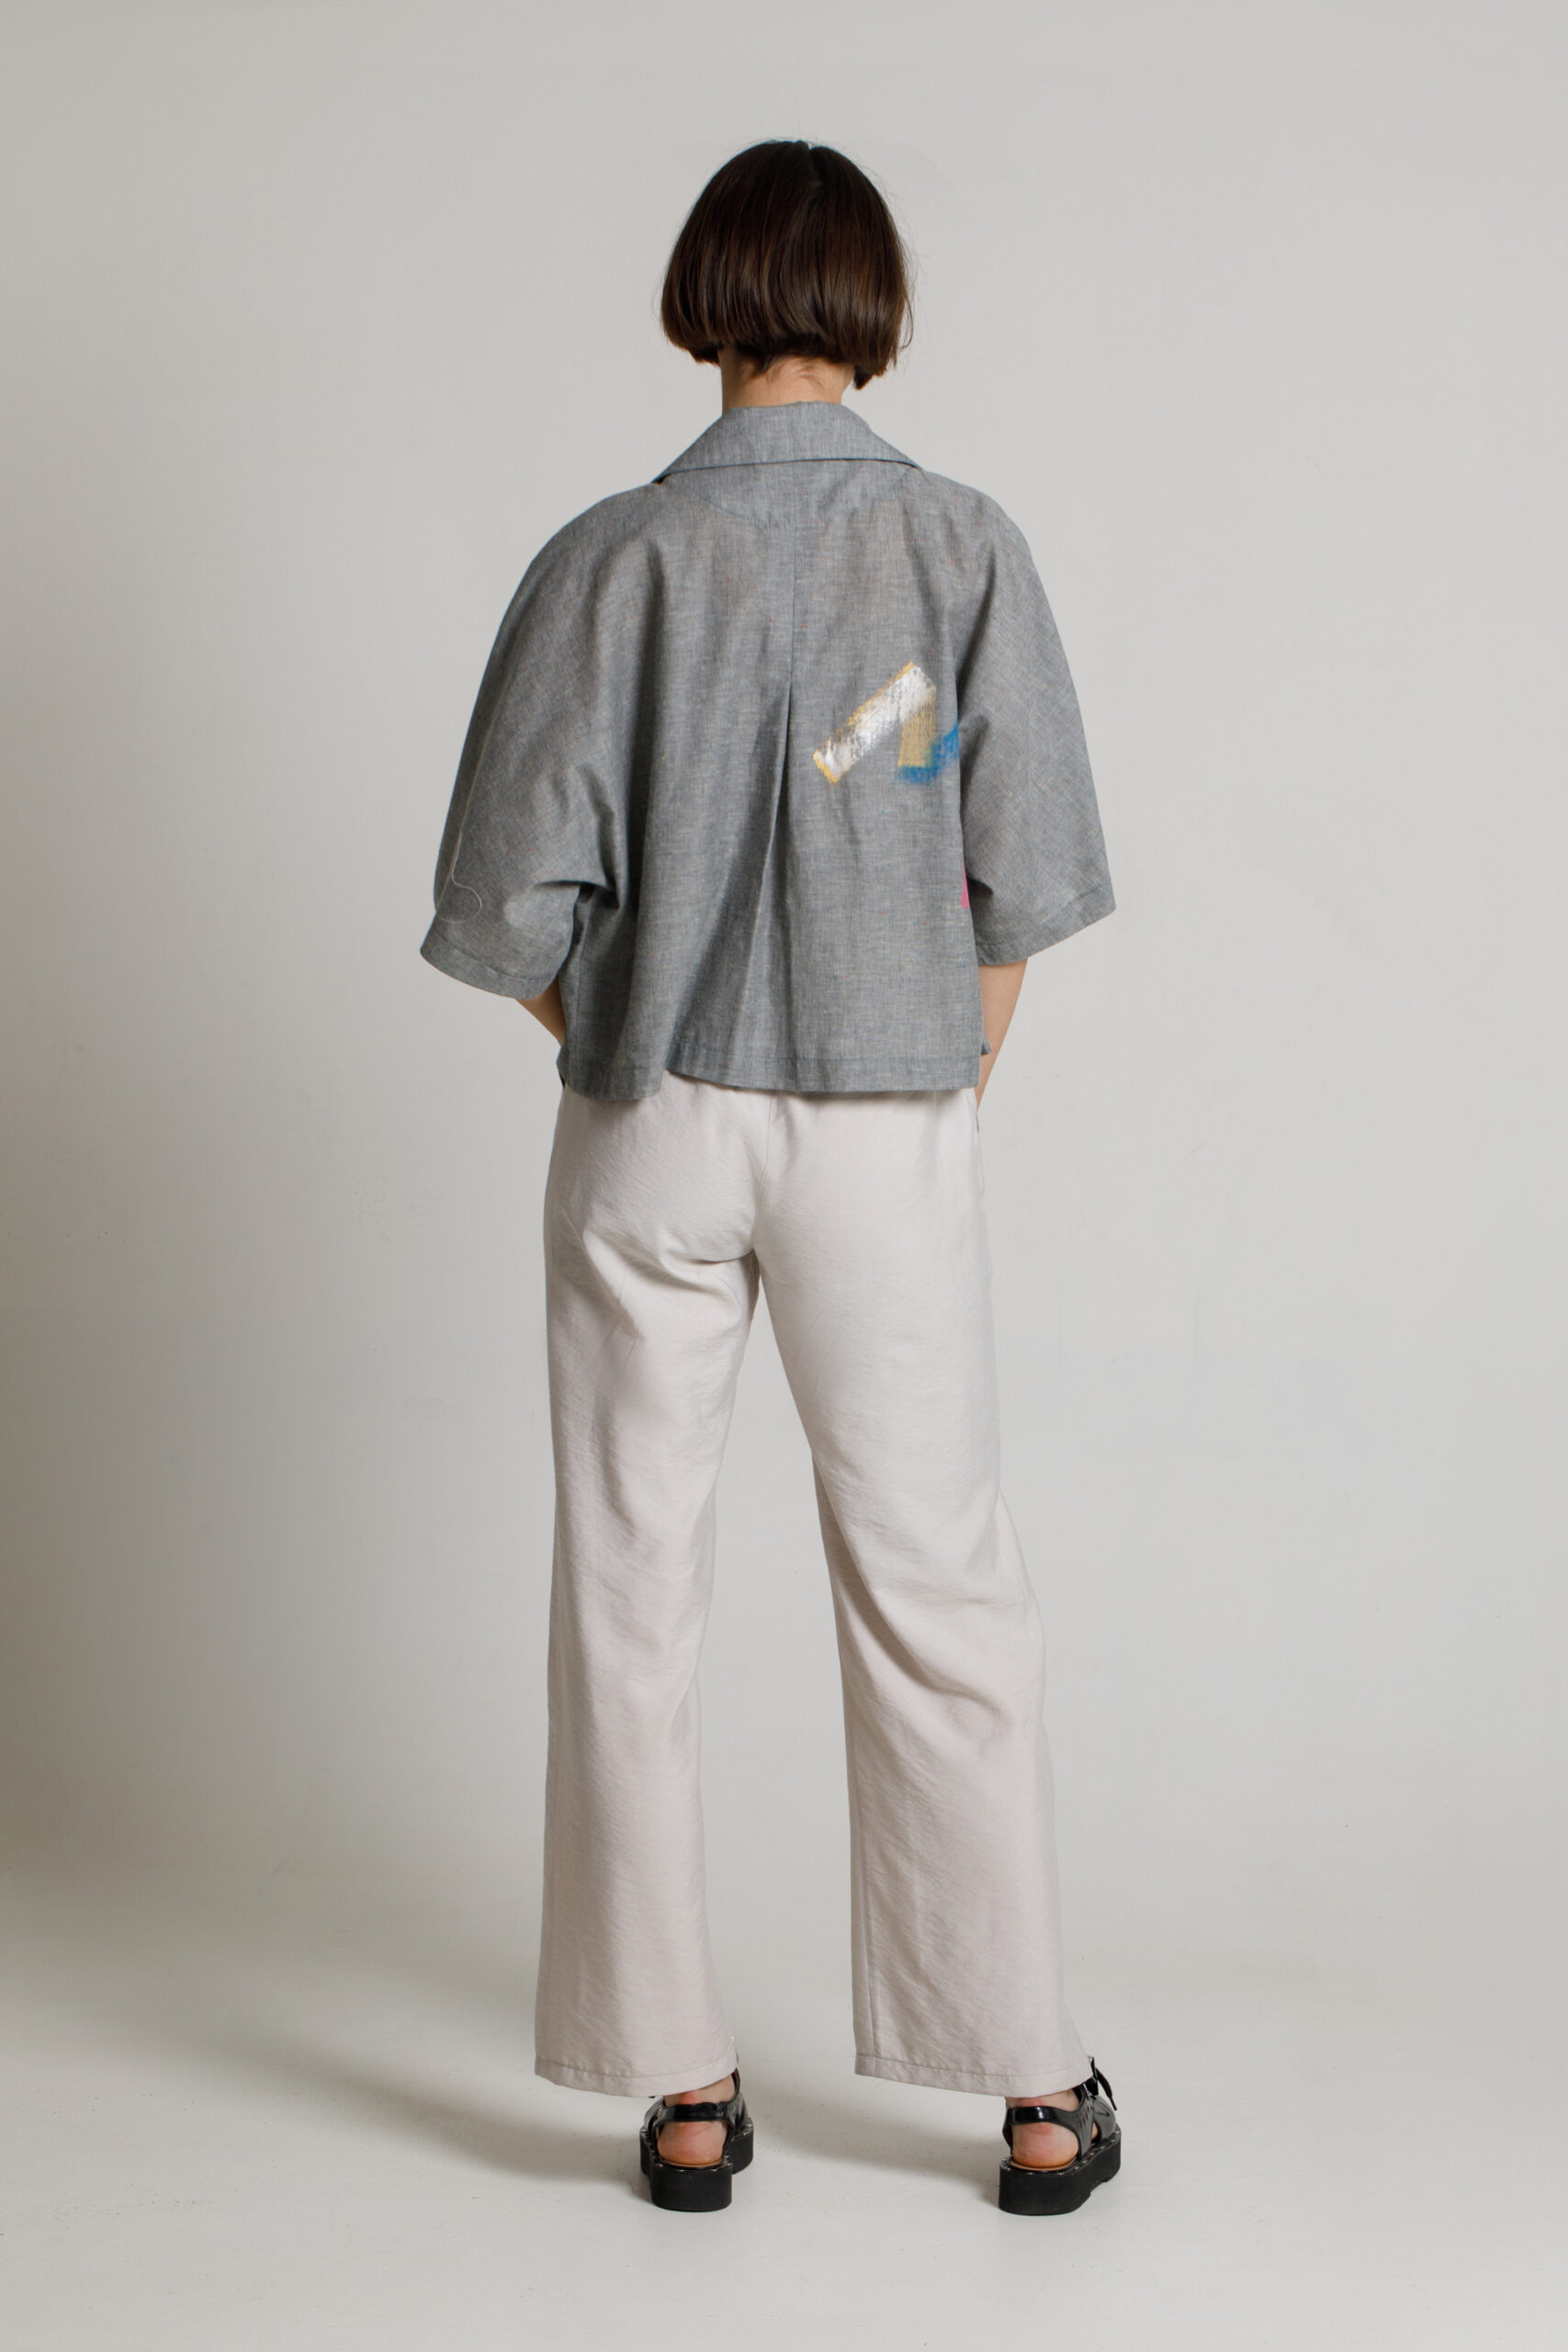 Jacheta KIT casual din poplin gri pictata manual. Materiale naturale, design unicat, cu broderie si aplicatii handmade